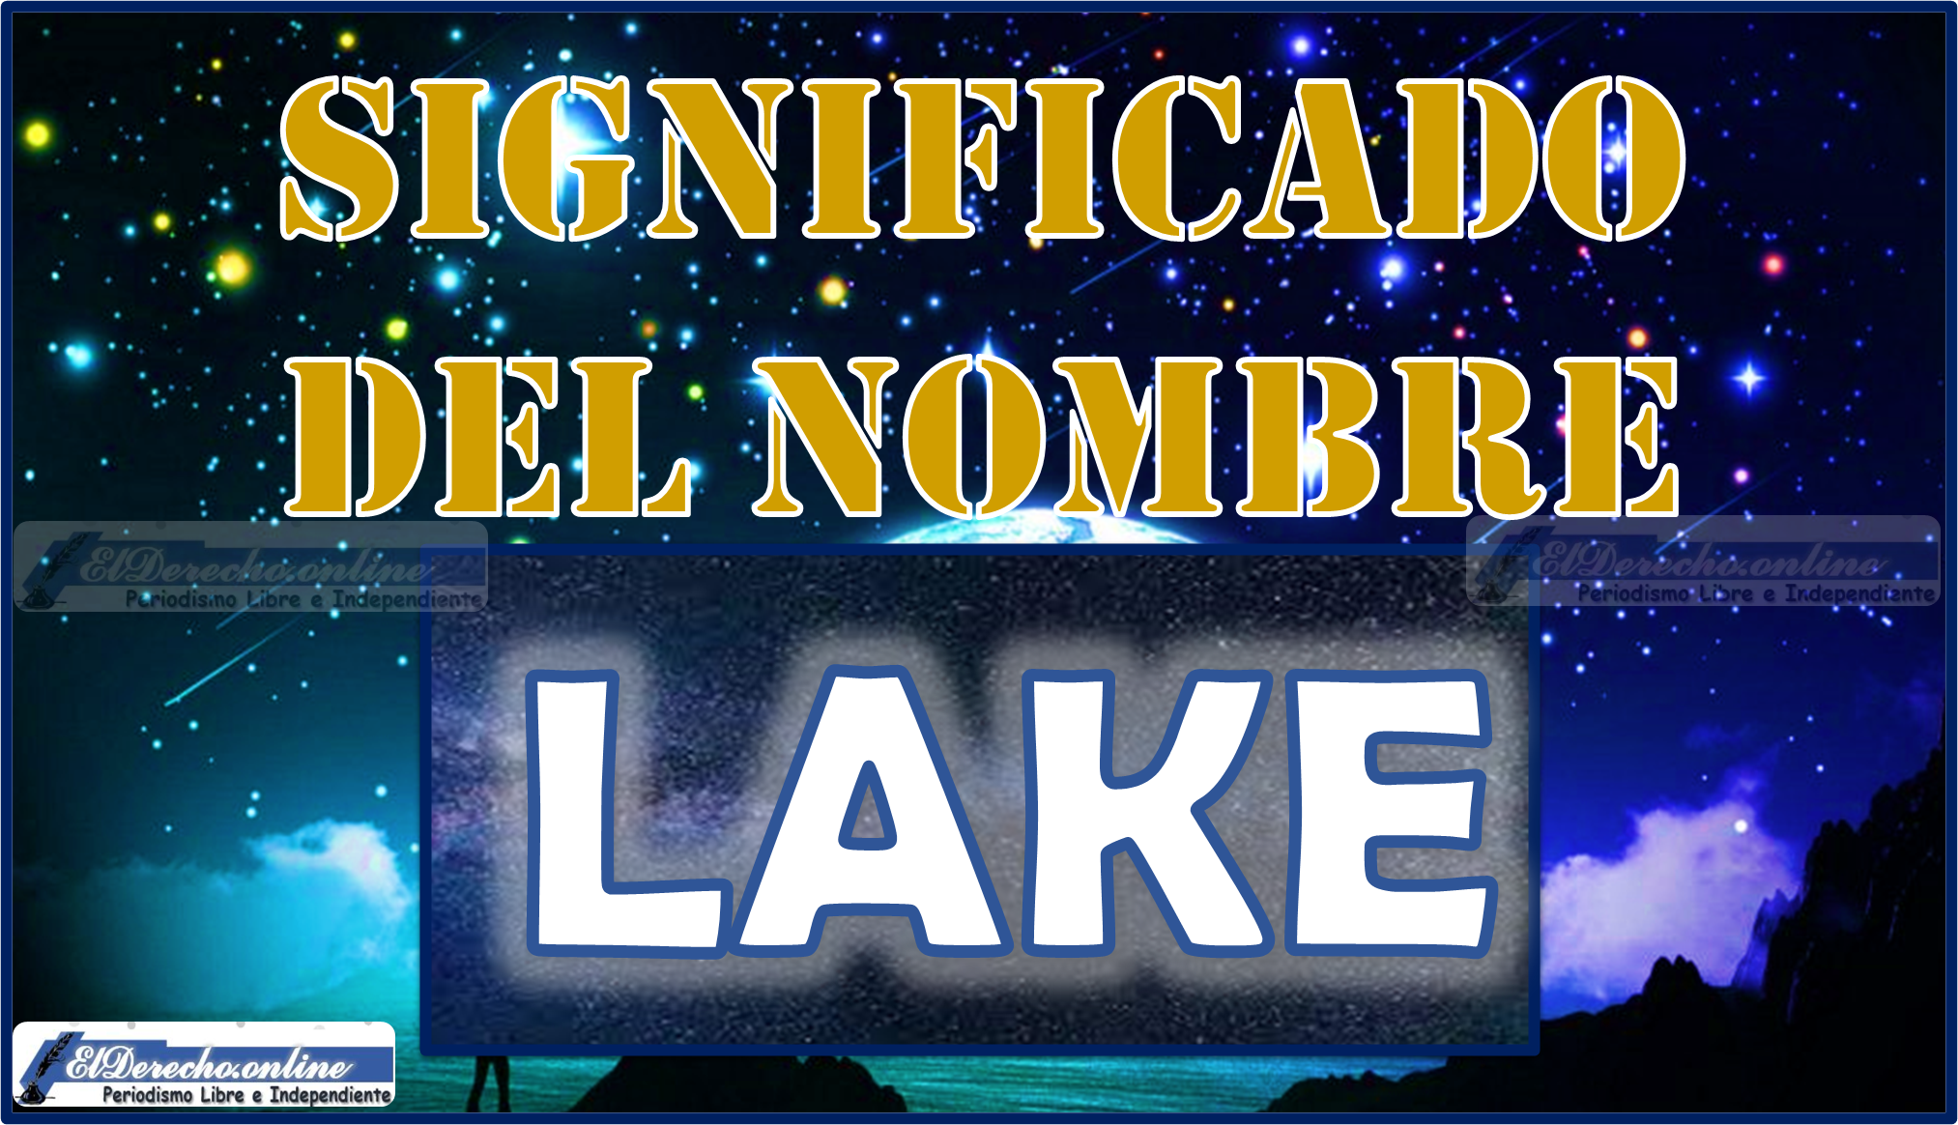 Significado del nombre Lake, su origen y más